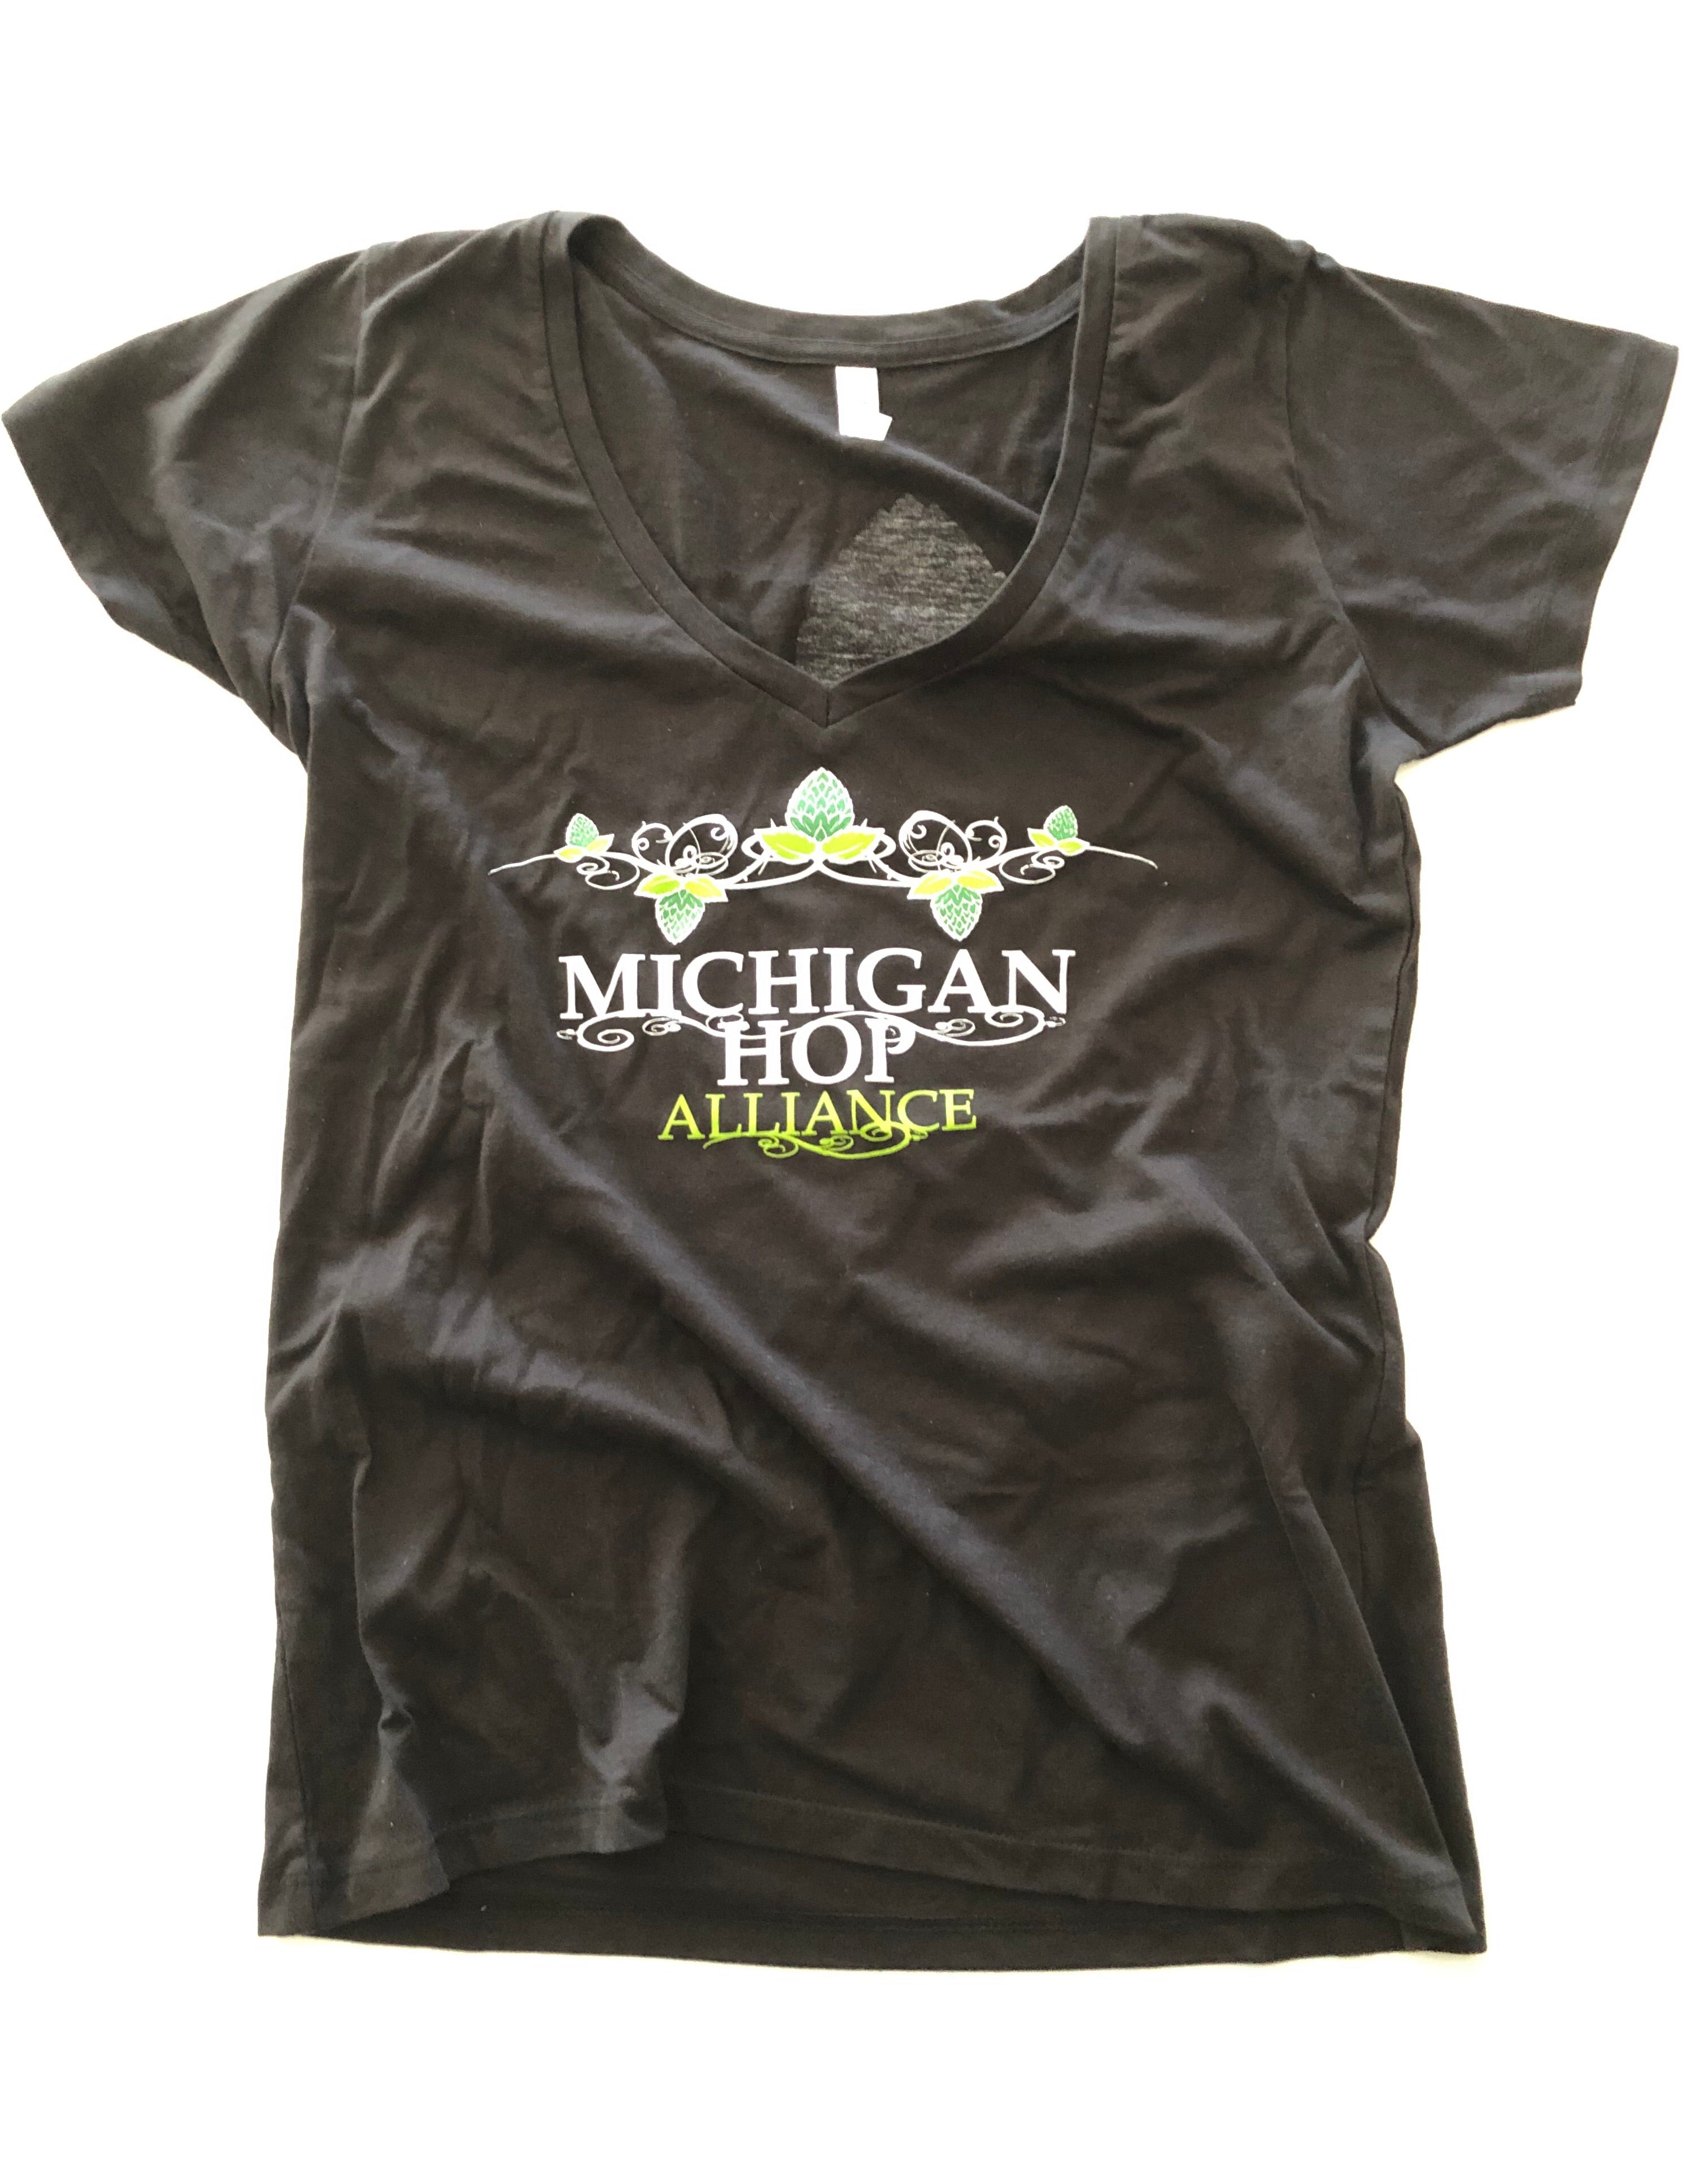 Hop Alliance Ladies T-Shirt